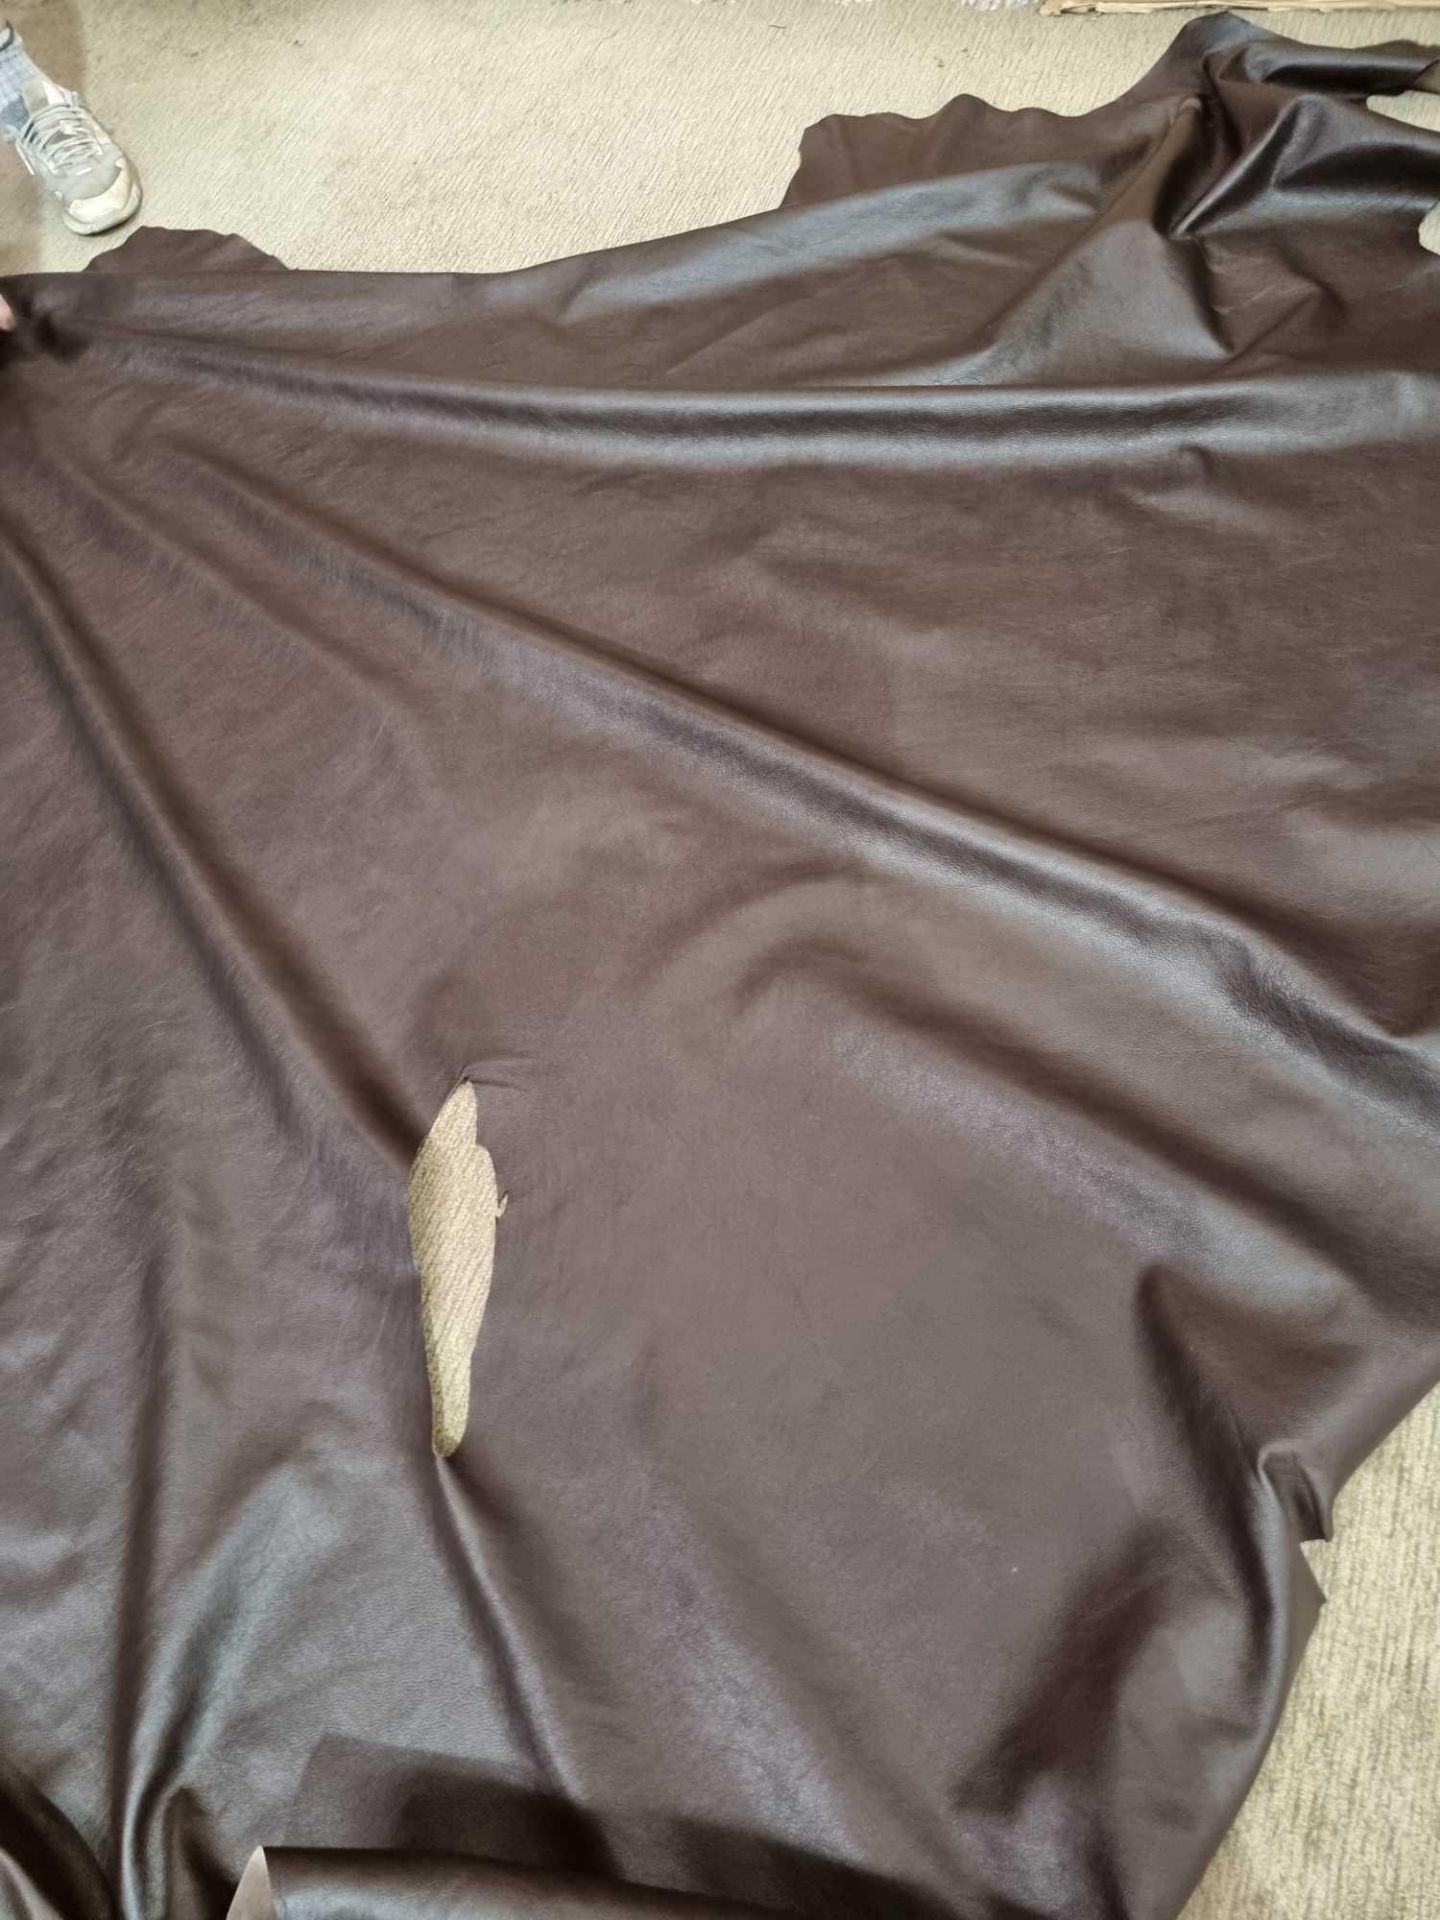 Chocolate Leather Hide approximately 3 78M2 2 1 x 1 8cm ( Hide No,150) - Bild 3 aus 3